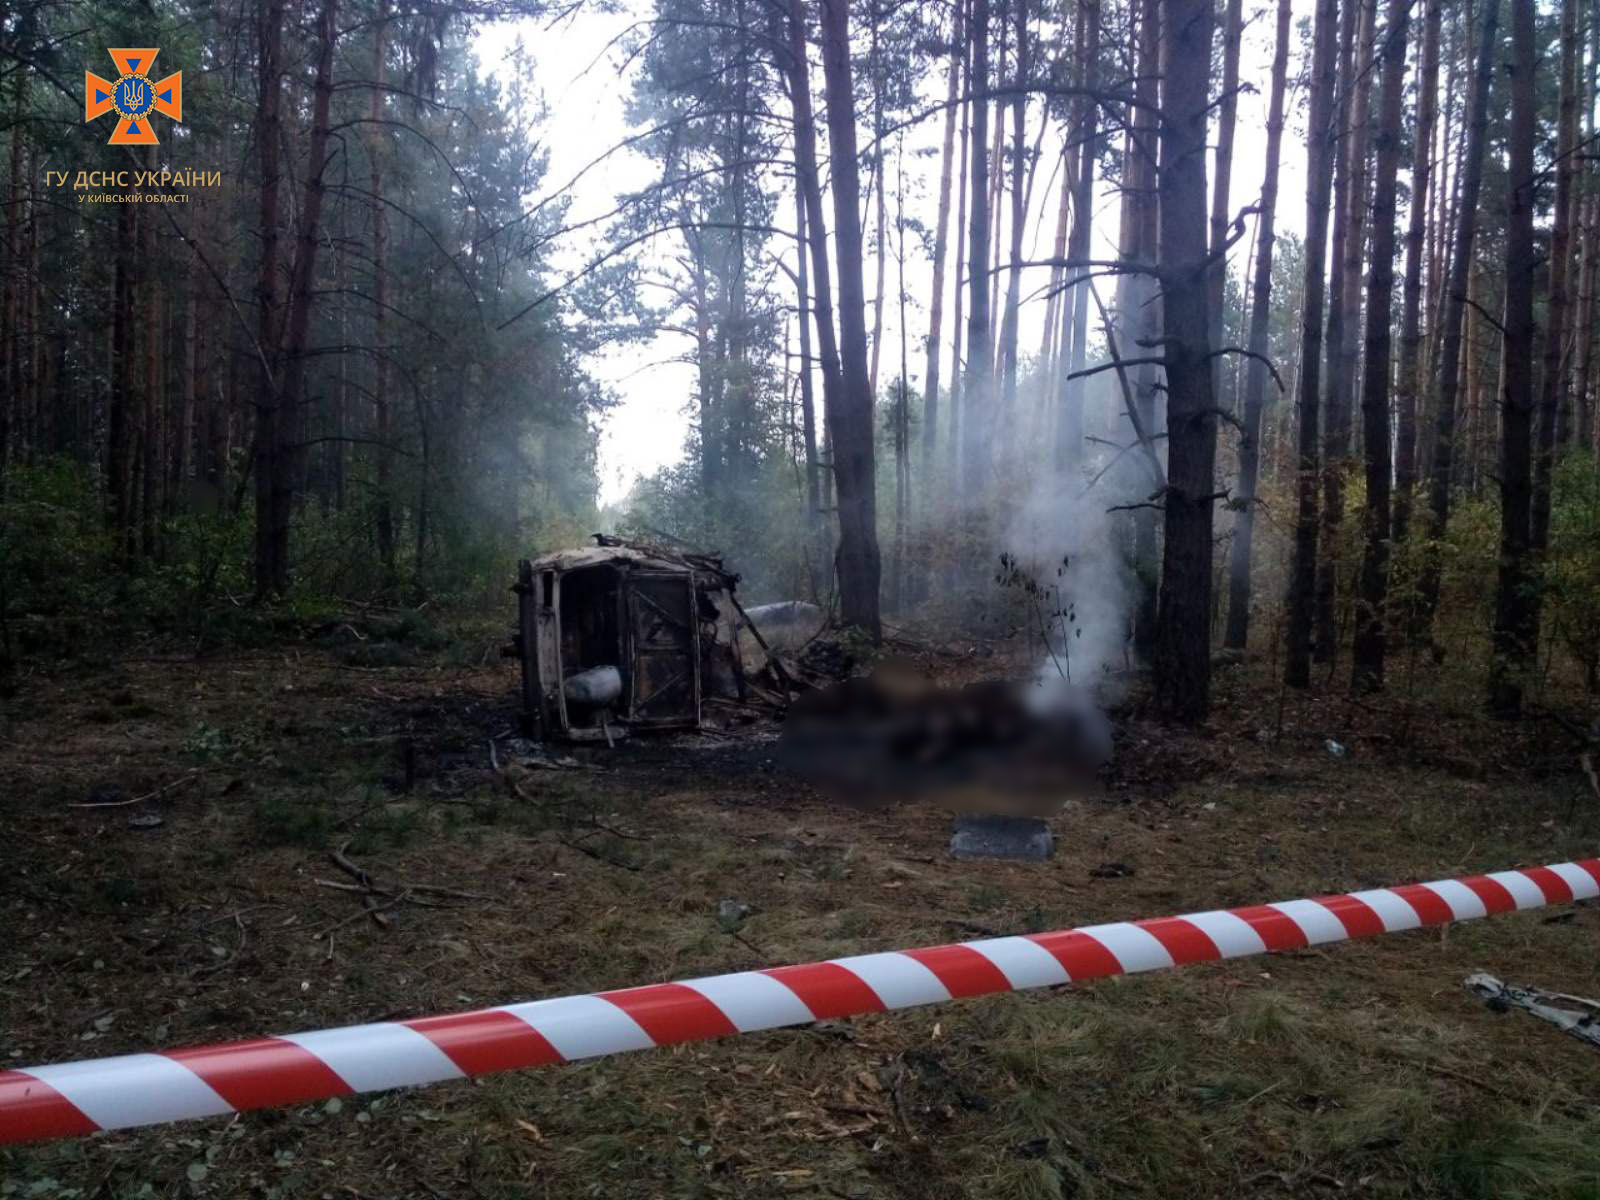 У Вишгородському районі автомобіль в лісі наїхав на міну, водій загинув